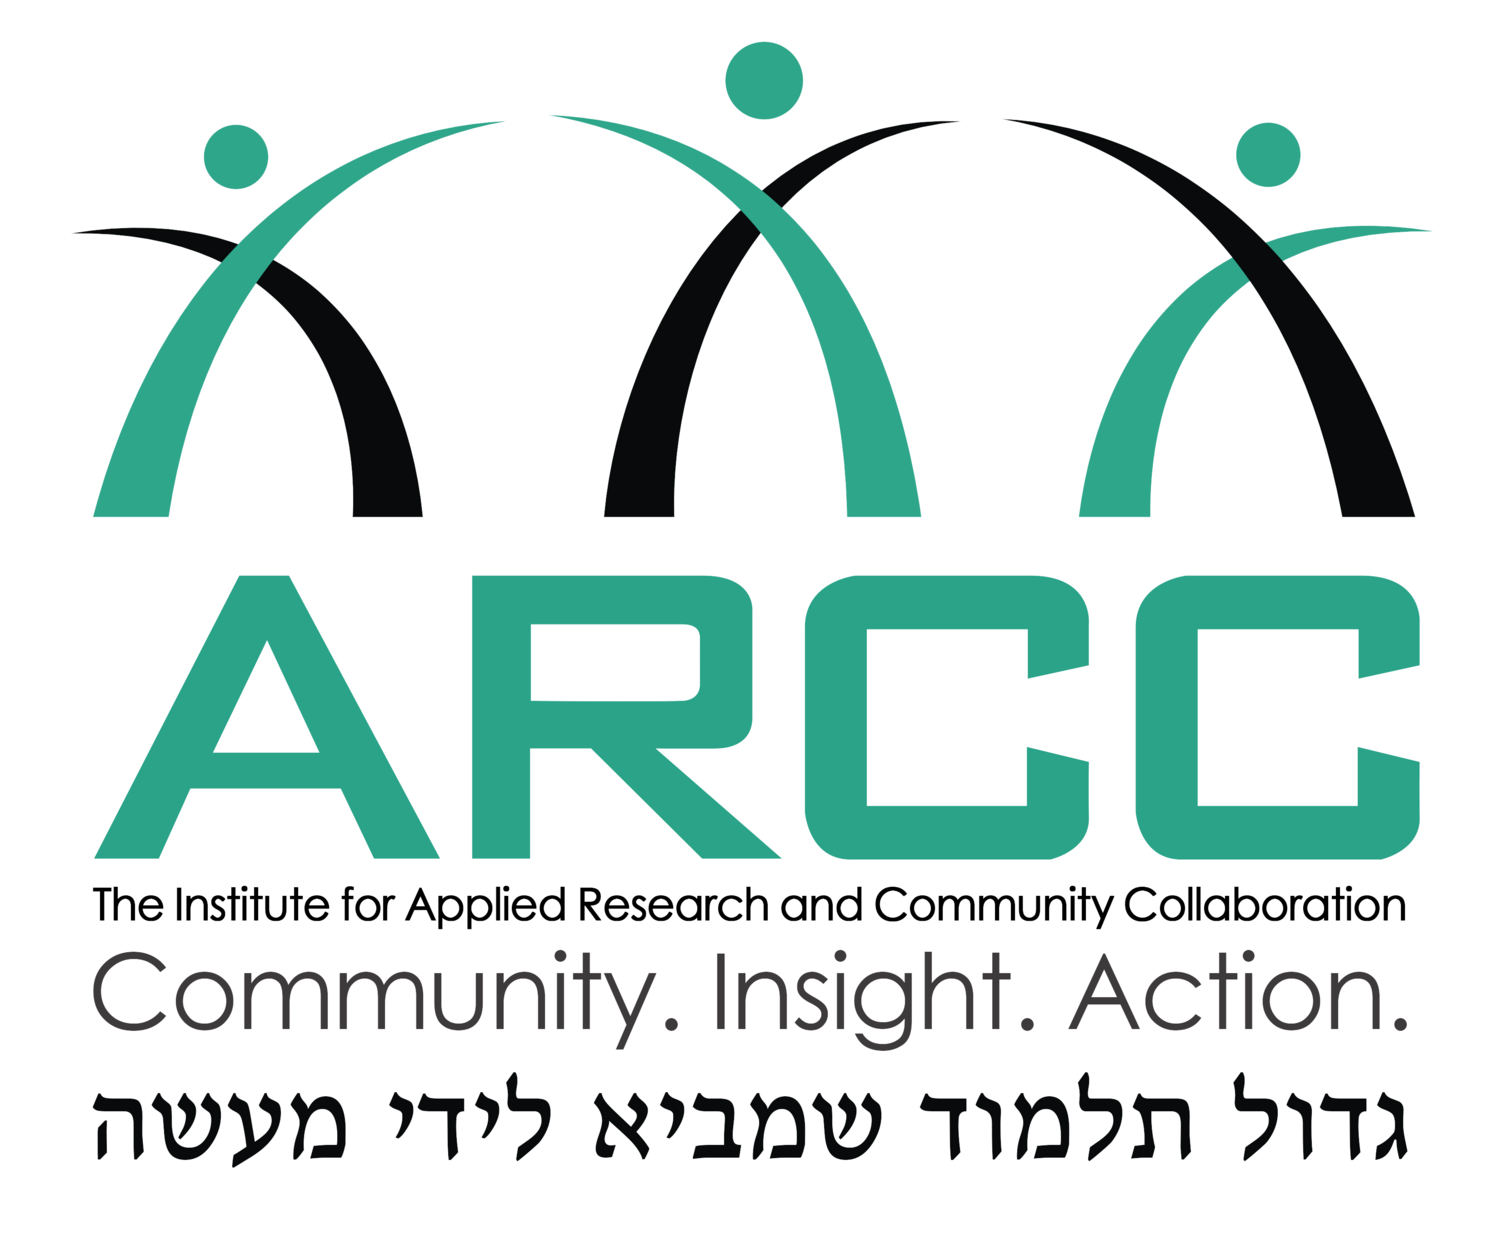 ARCC Institute